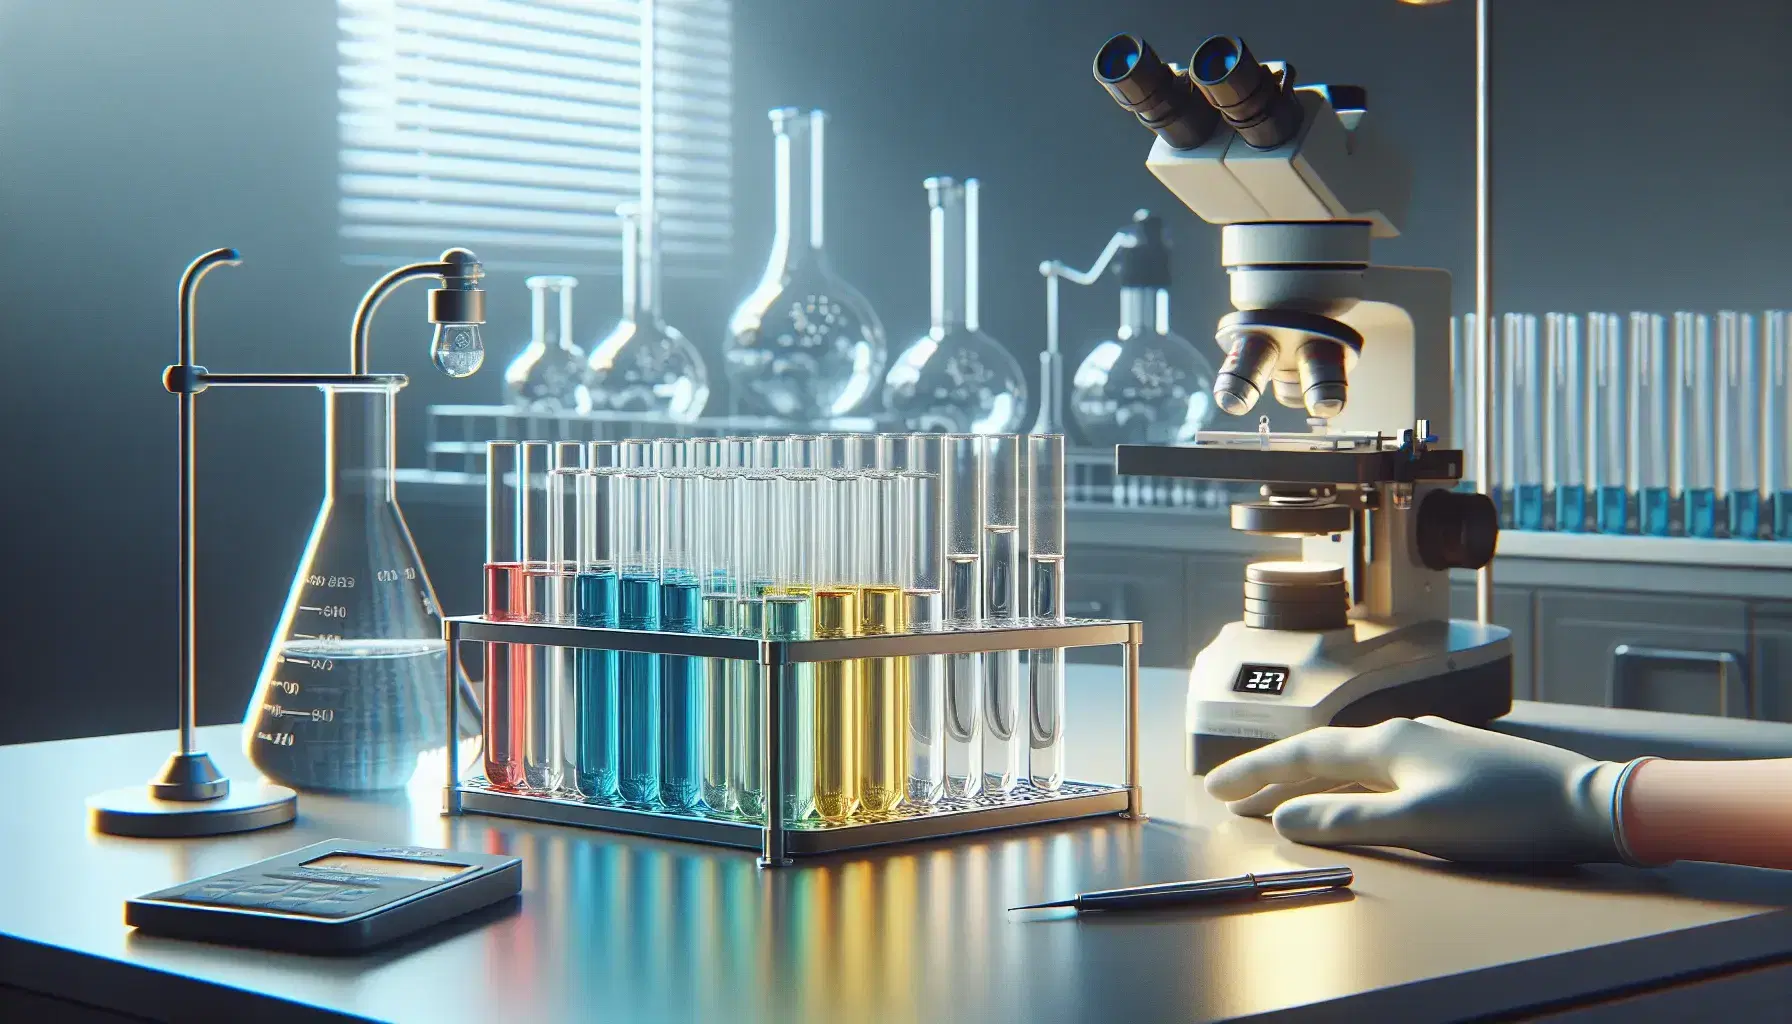 Laboratorio científico con tubos de ensayo de colores en soporte metálico, microscopio y balanza analítica, junto a un Erlenmeyer sostenido por una mano enguantada.